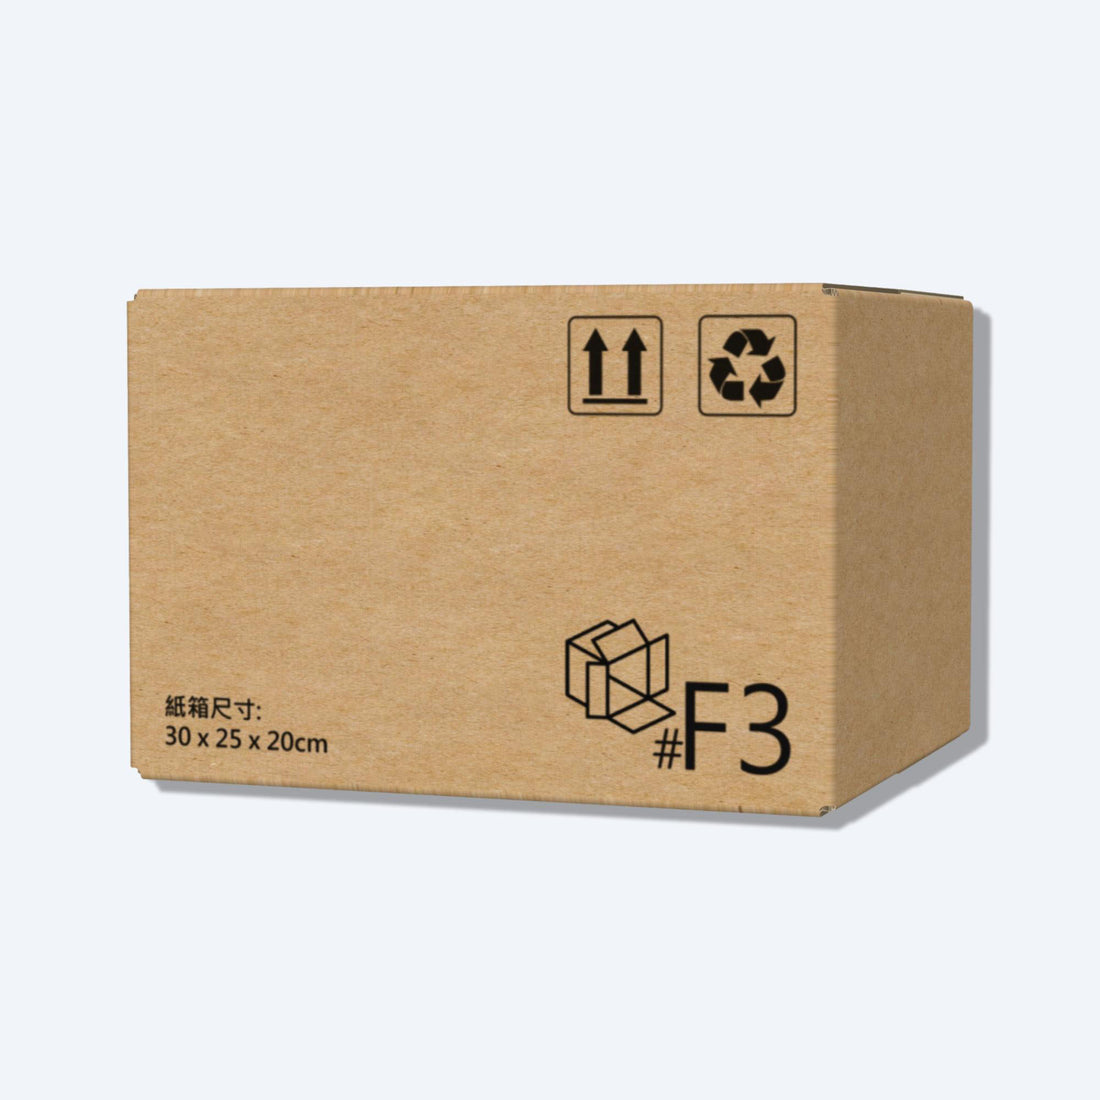 快遞紙箱 - 順豐F3 - 30×25×20cm